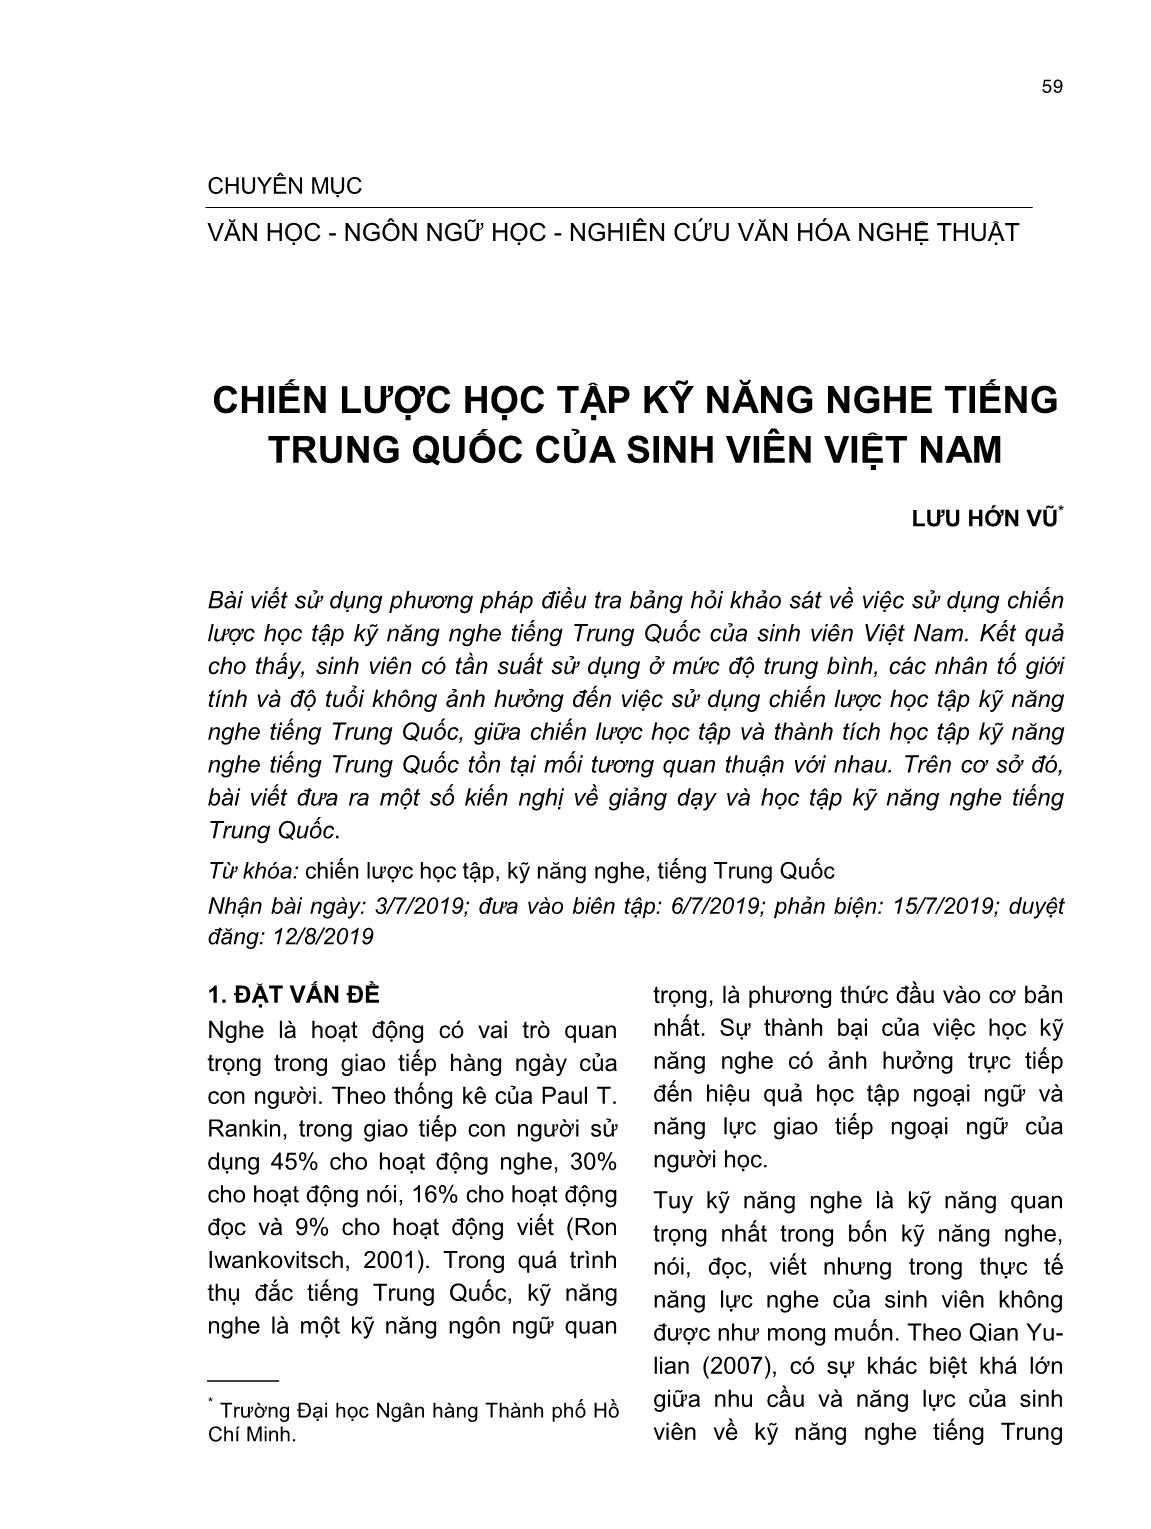 Chiến lược học tập kỹ năng nghe tiếng Trung Quốc của sinh viên Việt Nam trang 1